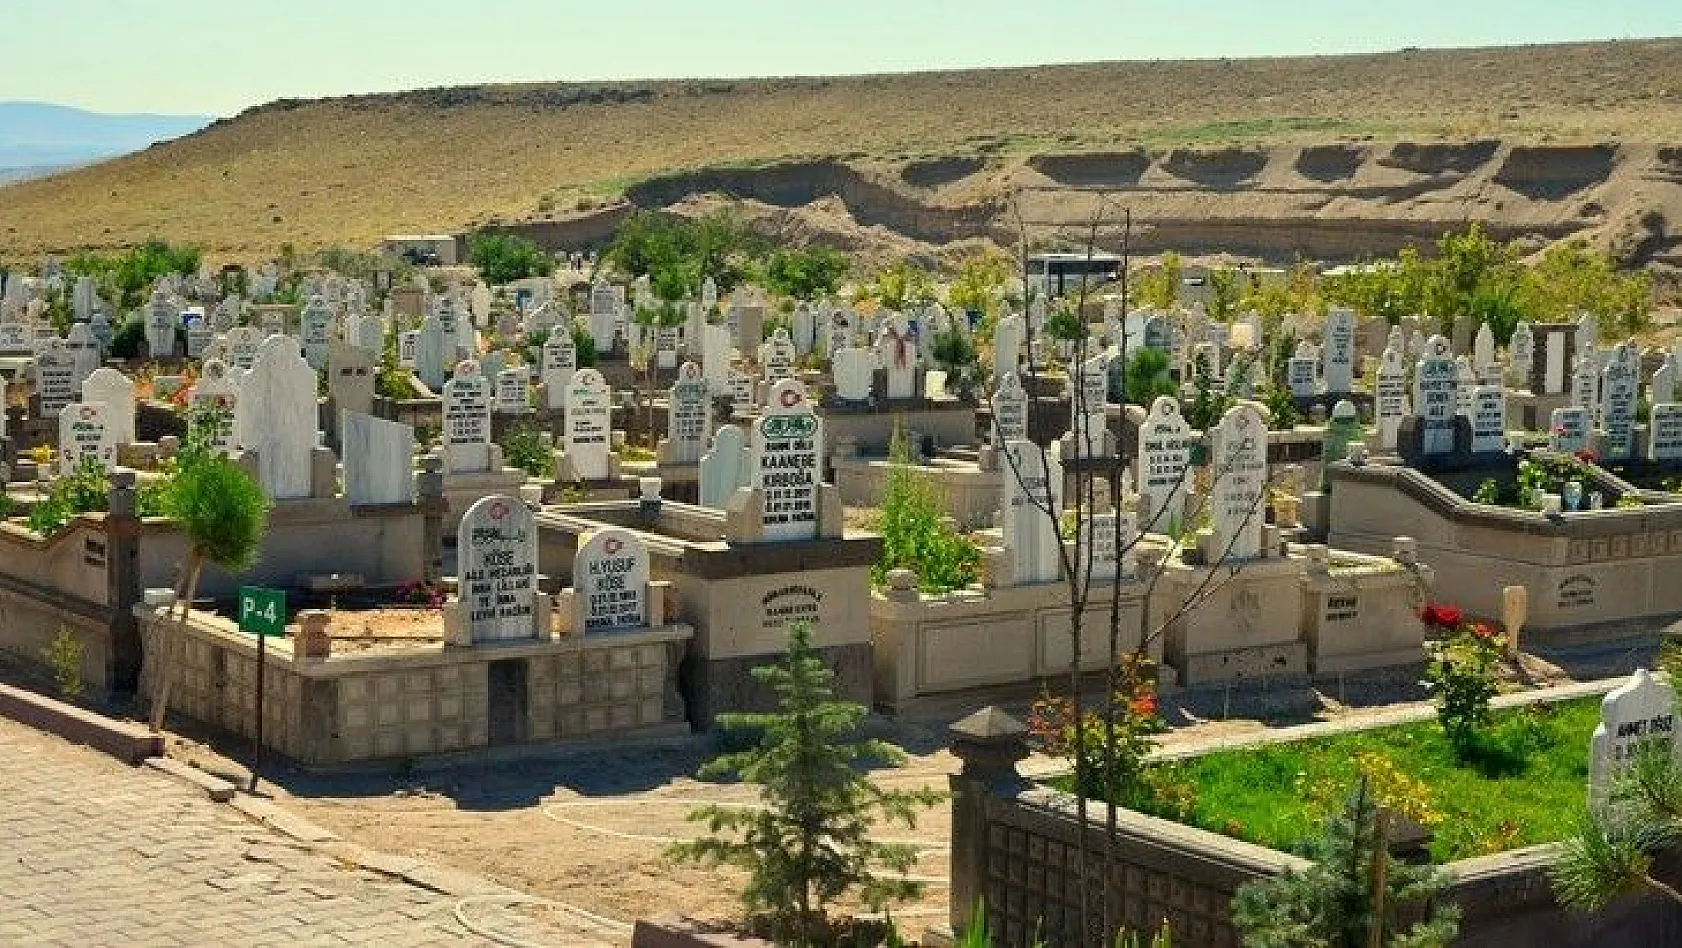 Mezarlık sıkıntısı! Erkilet'in dışında yer yok!